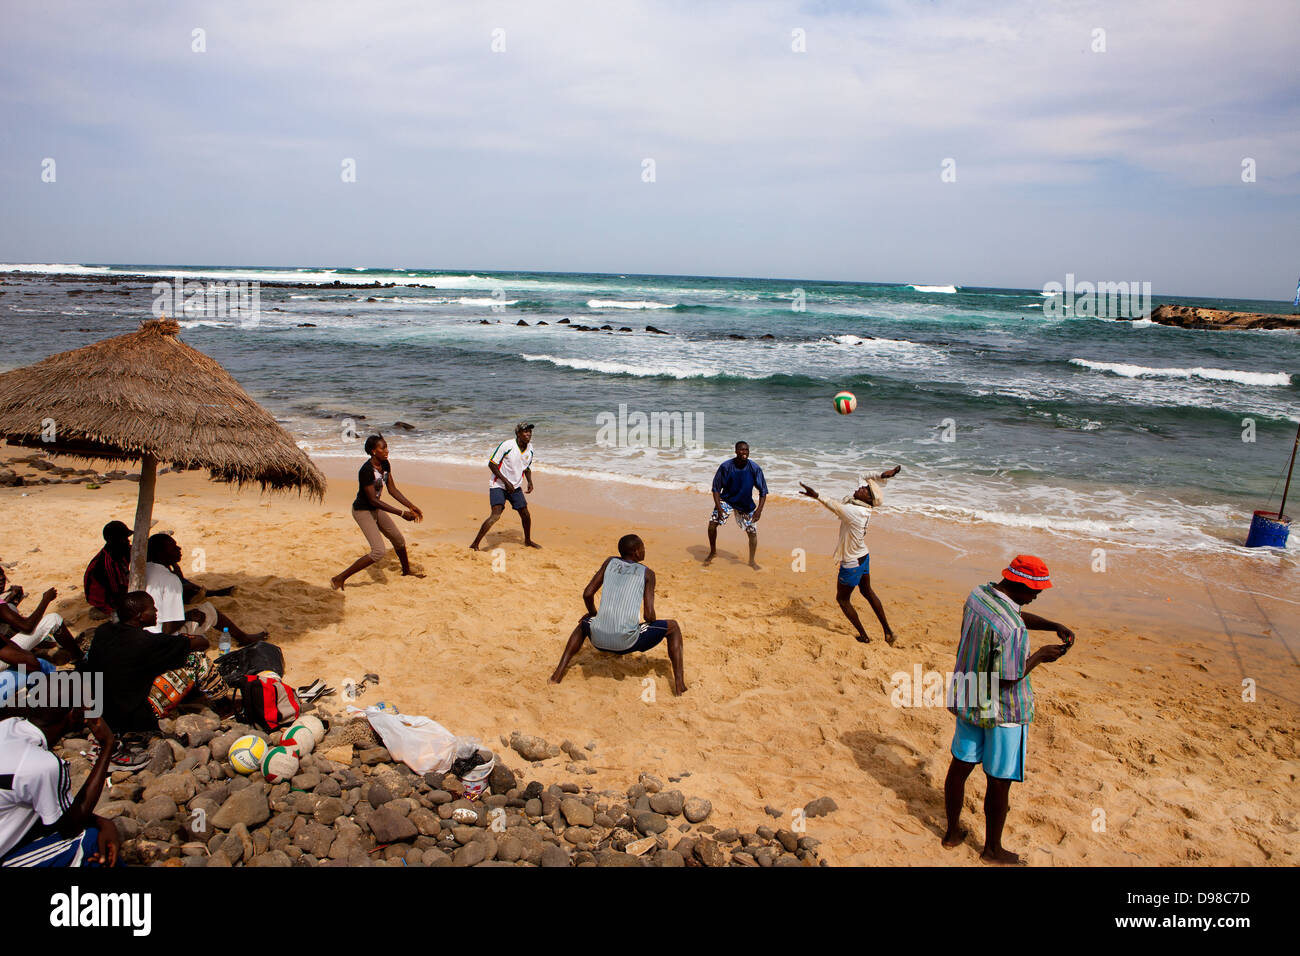 Porn on a beach in Dakar